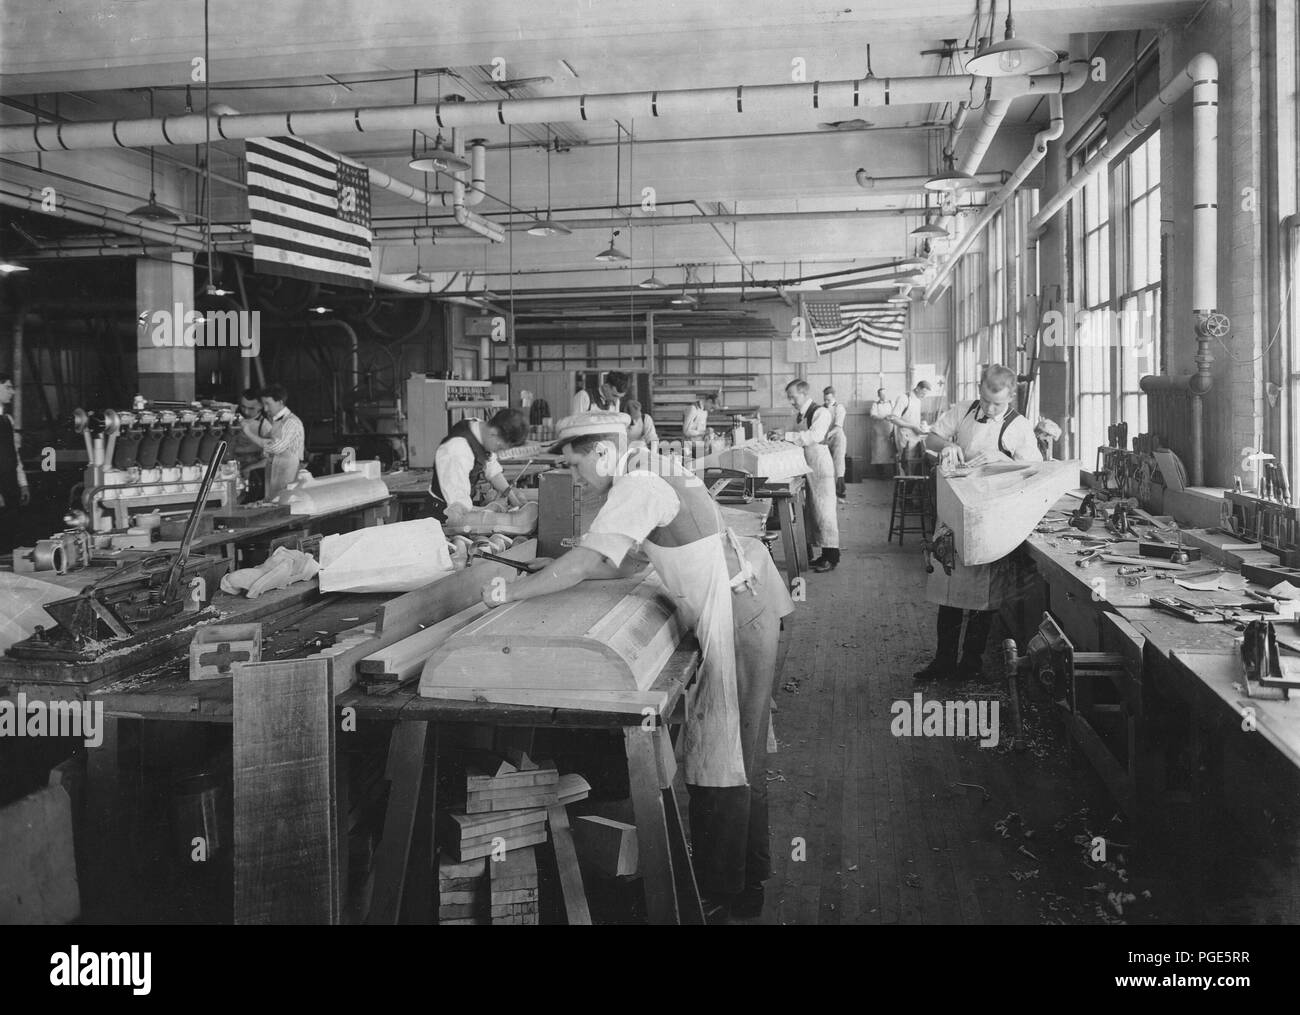 Packard Motor Car Co. in Detroit, Michigan. Gesamte Engineering von Anlagen, die ausschließlich zur US-Regierung Flugzeug experimentelle Arbeit gewidmet. Muster Shop - Holz Modelle Stockfoto